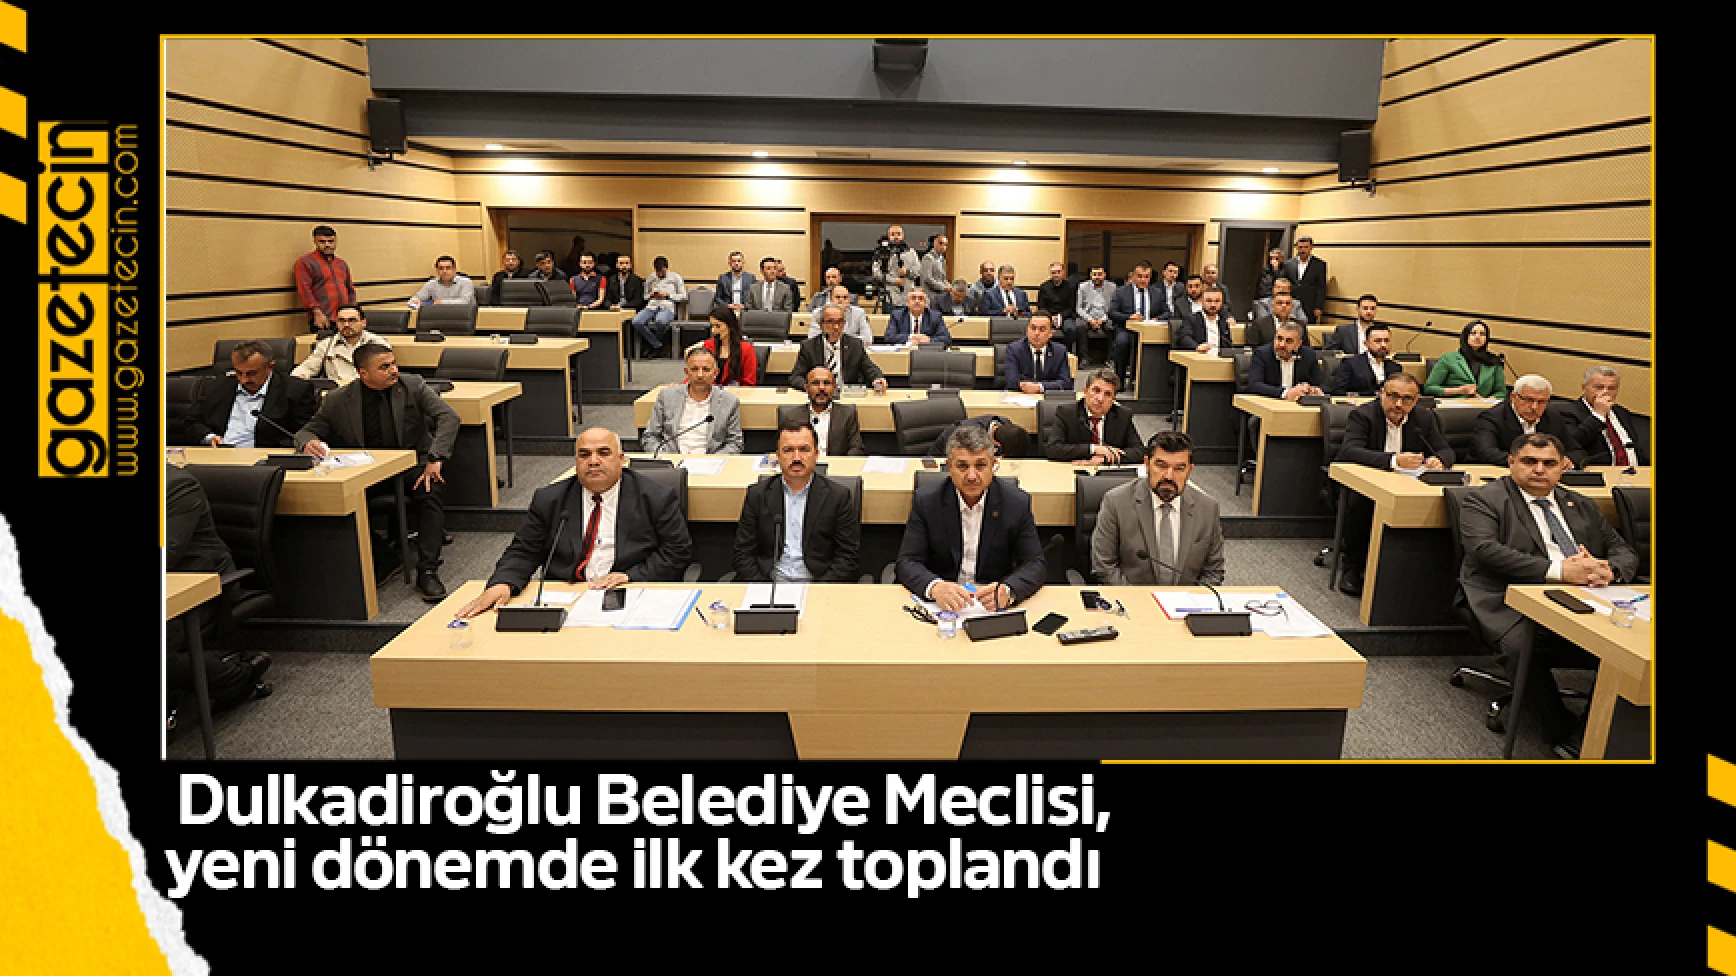 Dulkadiroğlu Belediye Meclisi, yeni dönemde ilk kez toplandı